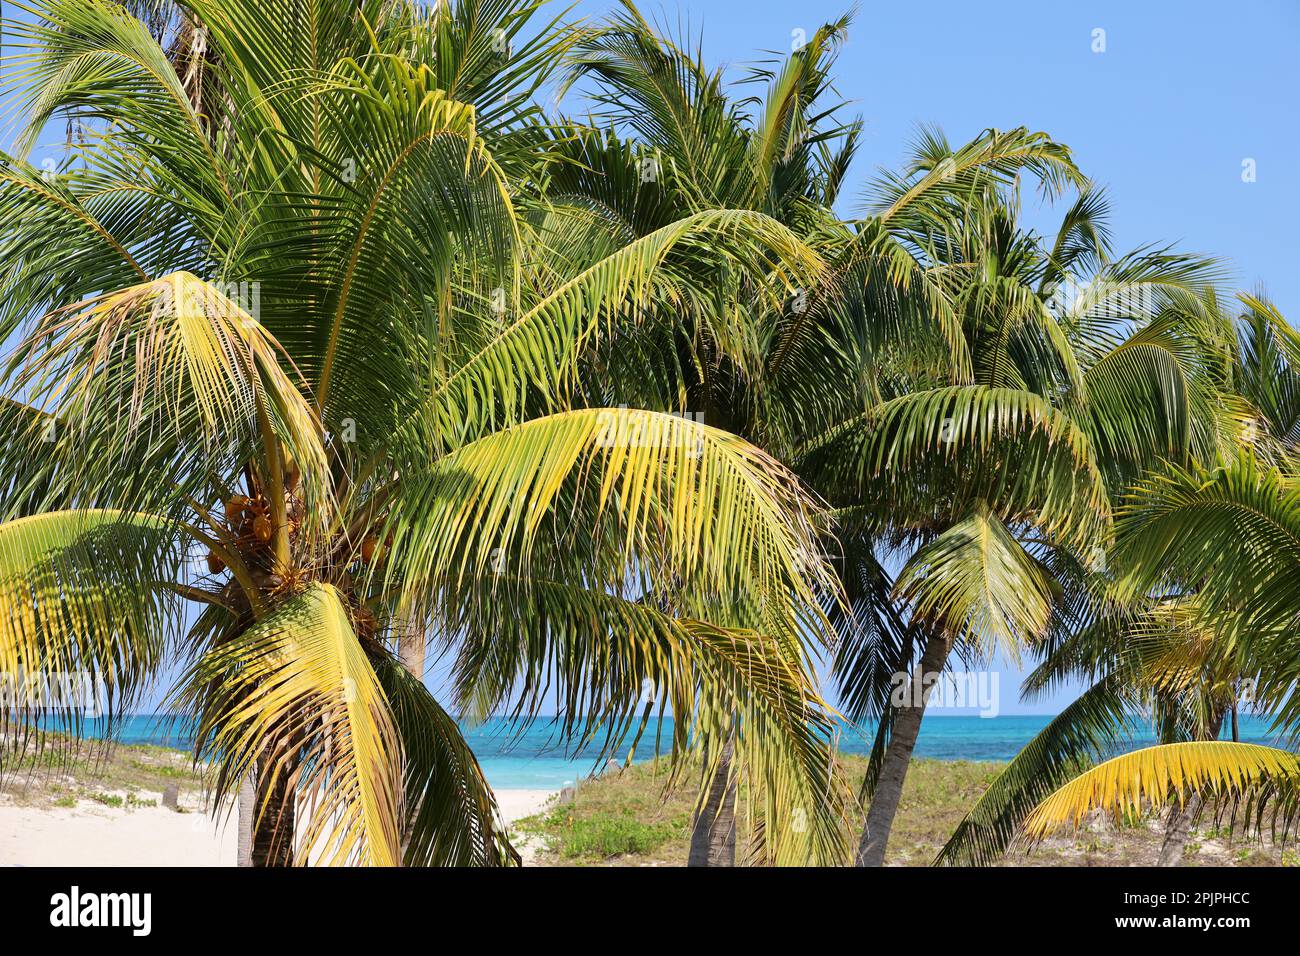 Palmiers à noix de coco sur la plage tropicale avec sable blanc. Côte de la mer des Caraïbes Banque D'Images